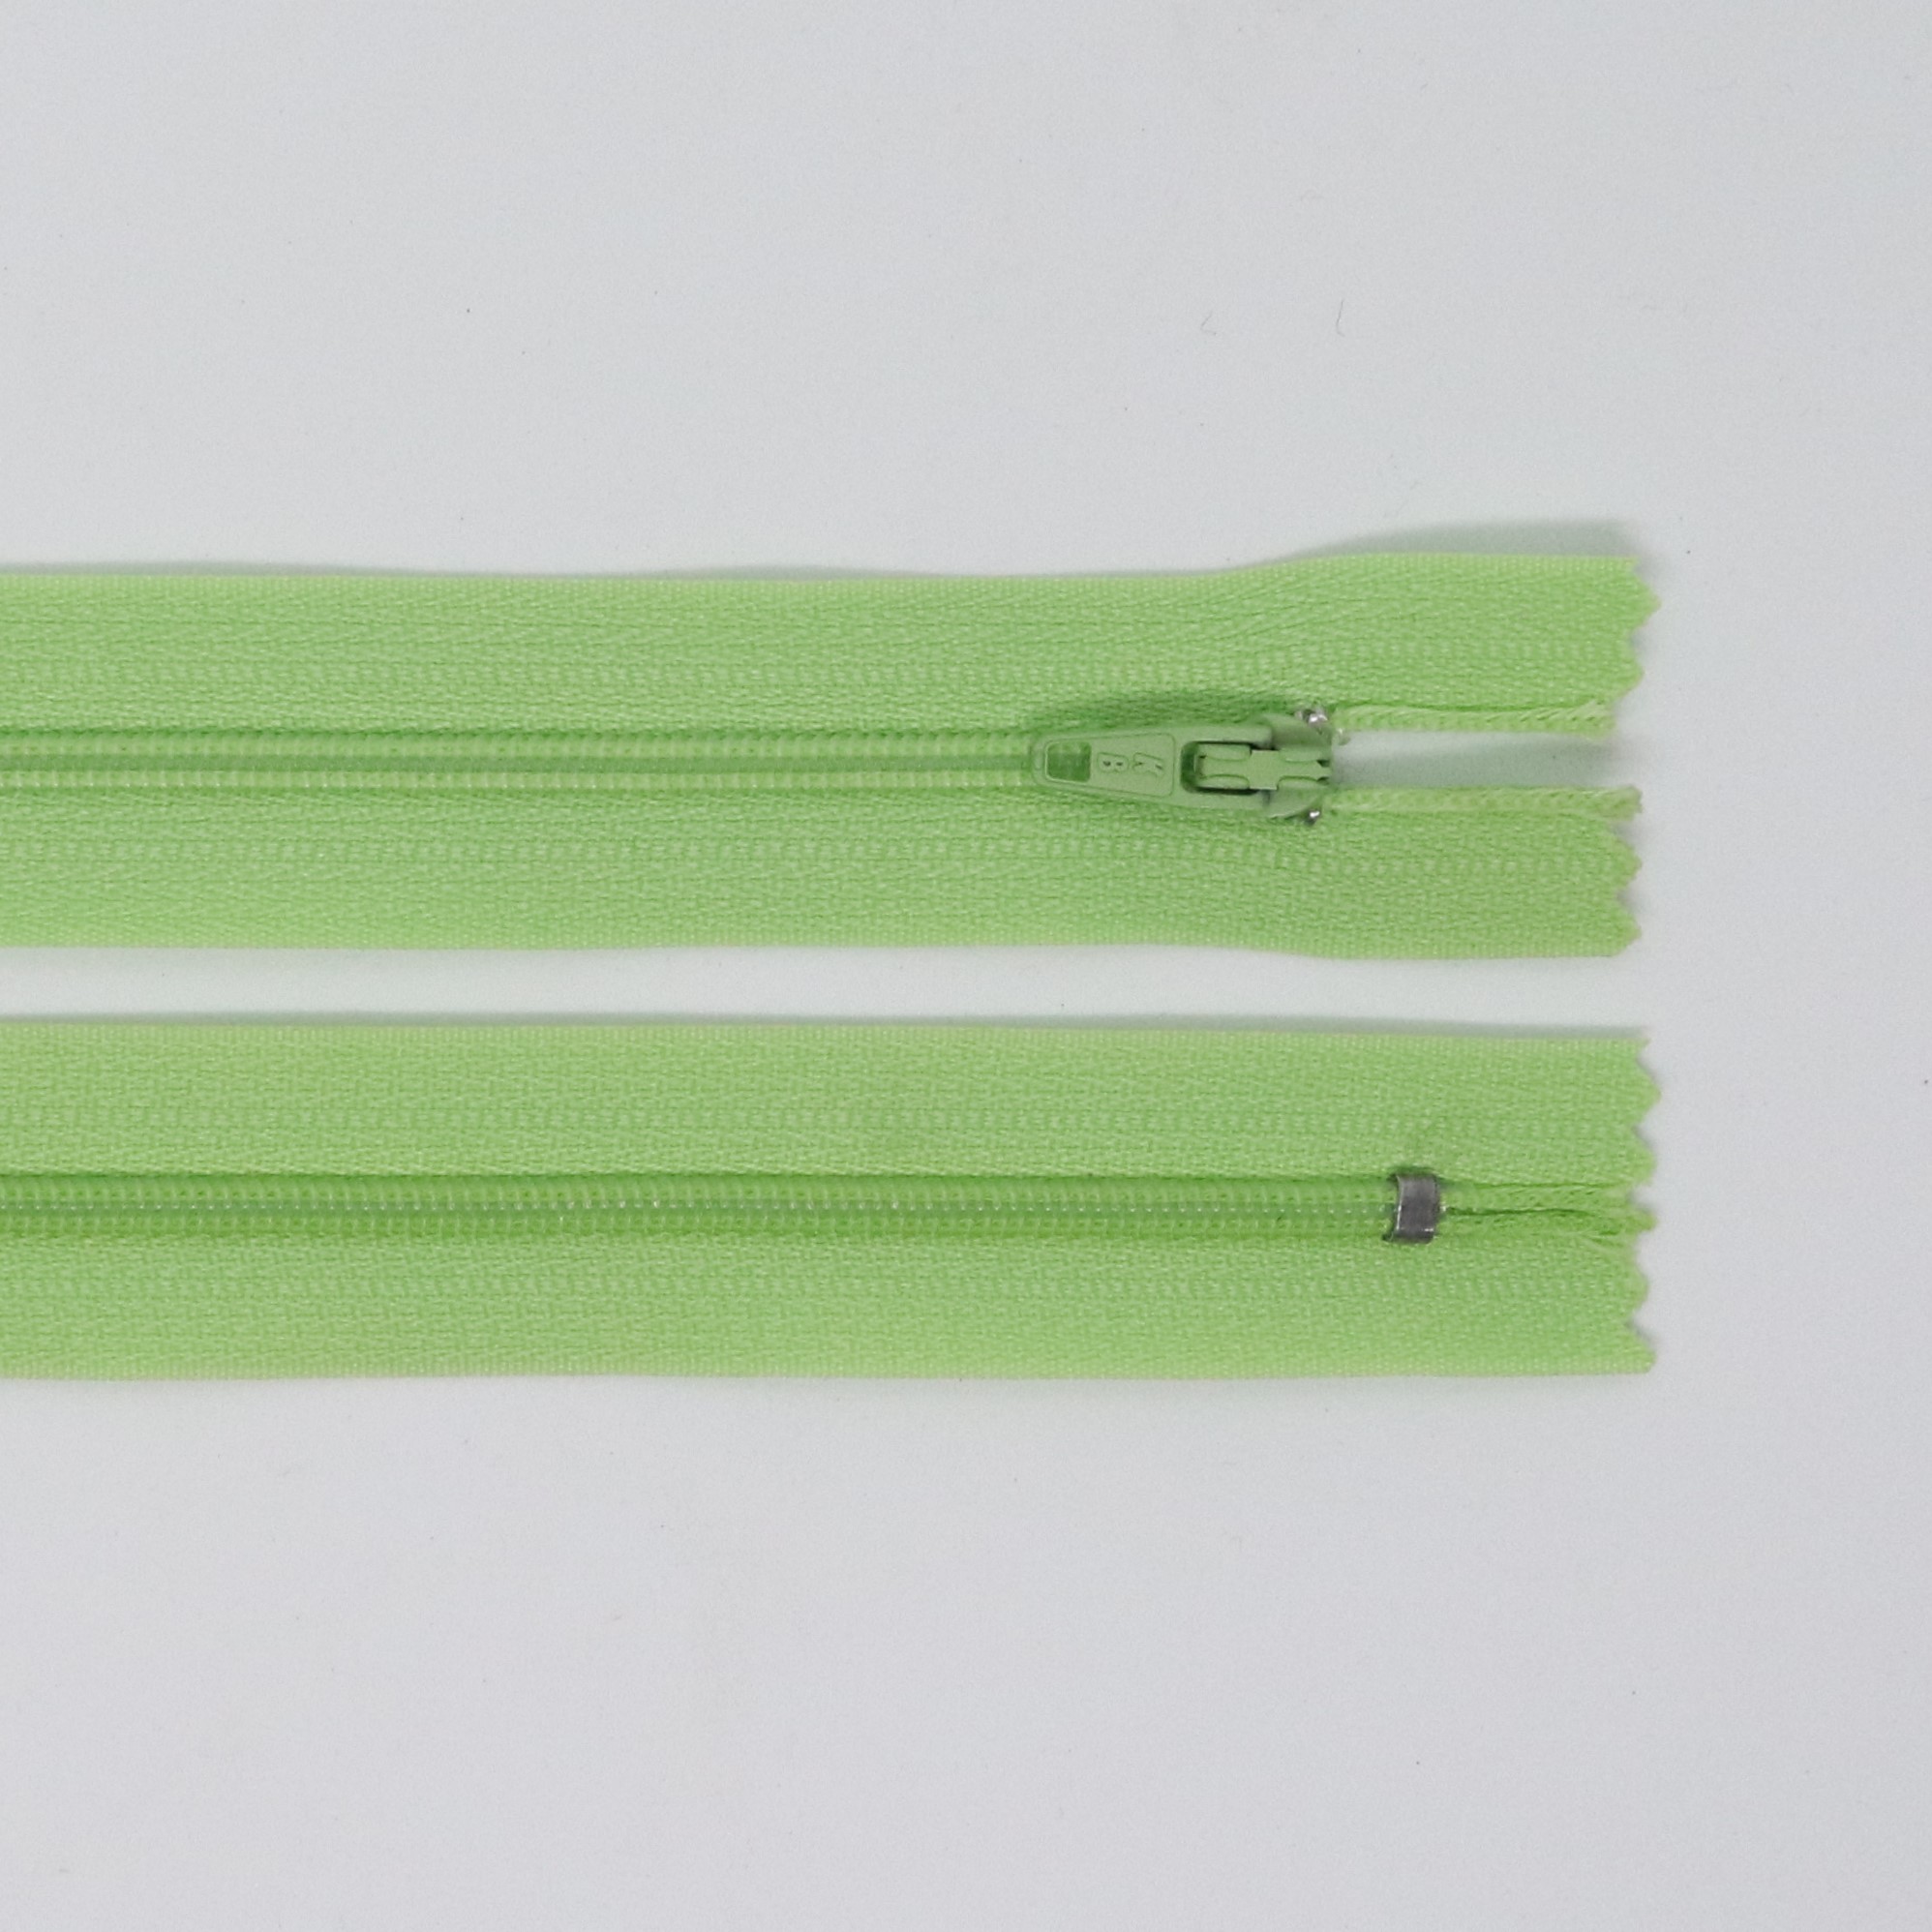 Spirálový zip, šíøe 3 mm, délka 40 cm, svìtle zelená - zvìtšit obrázek